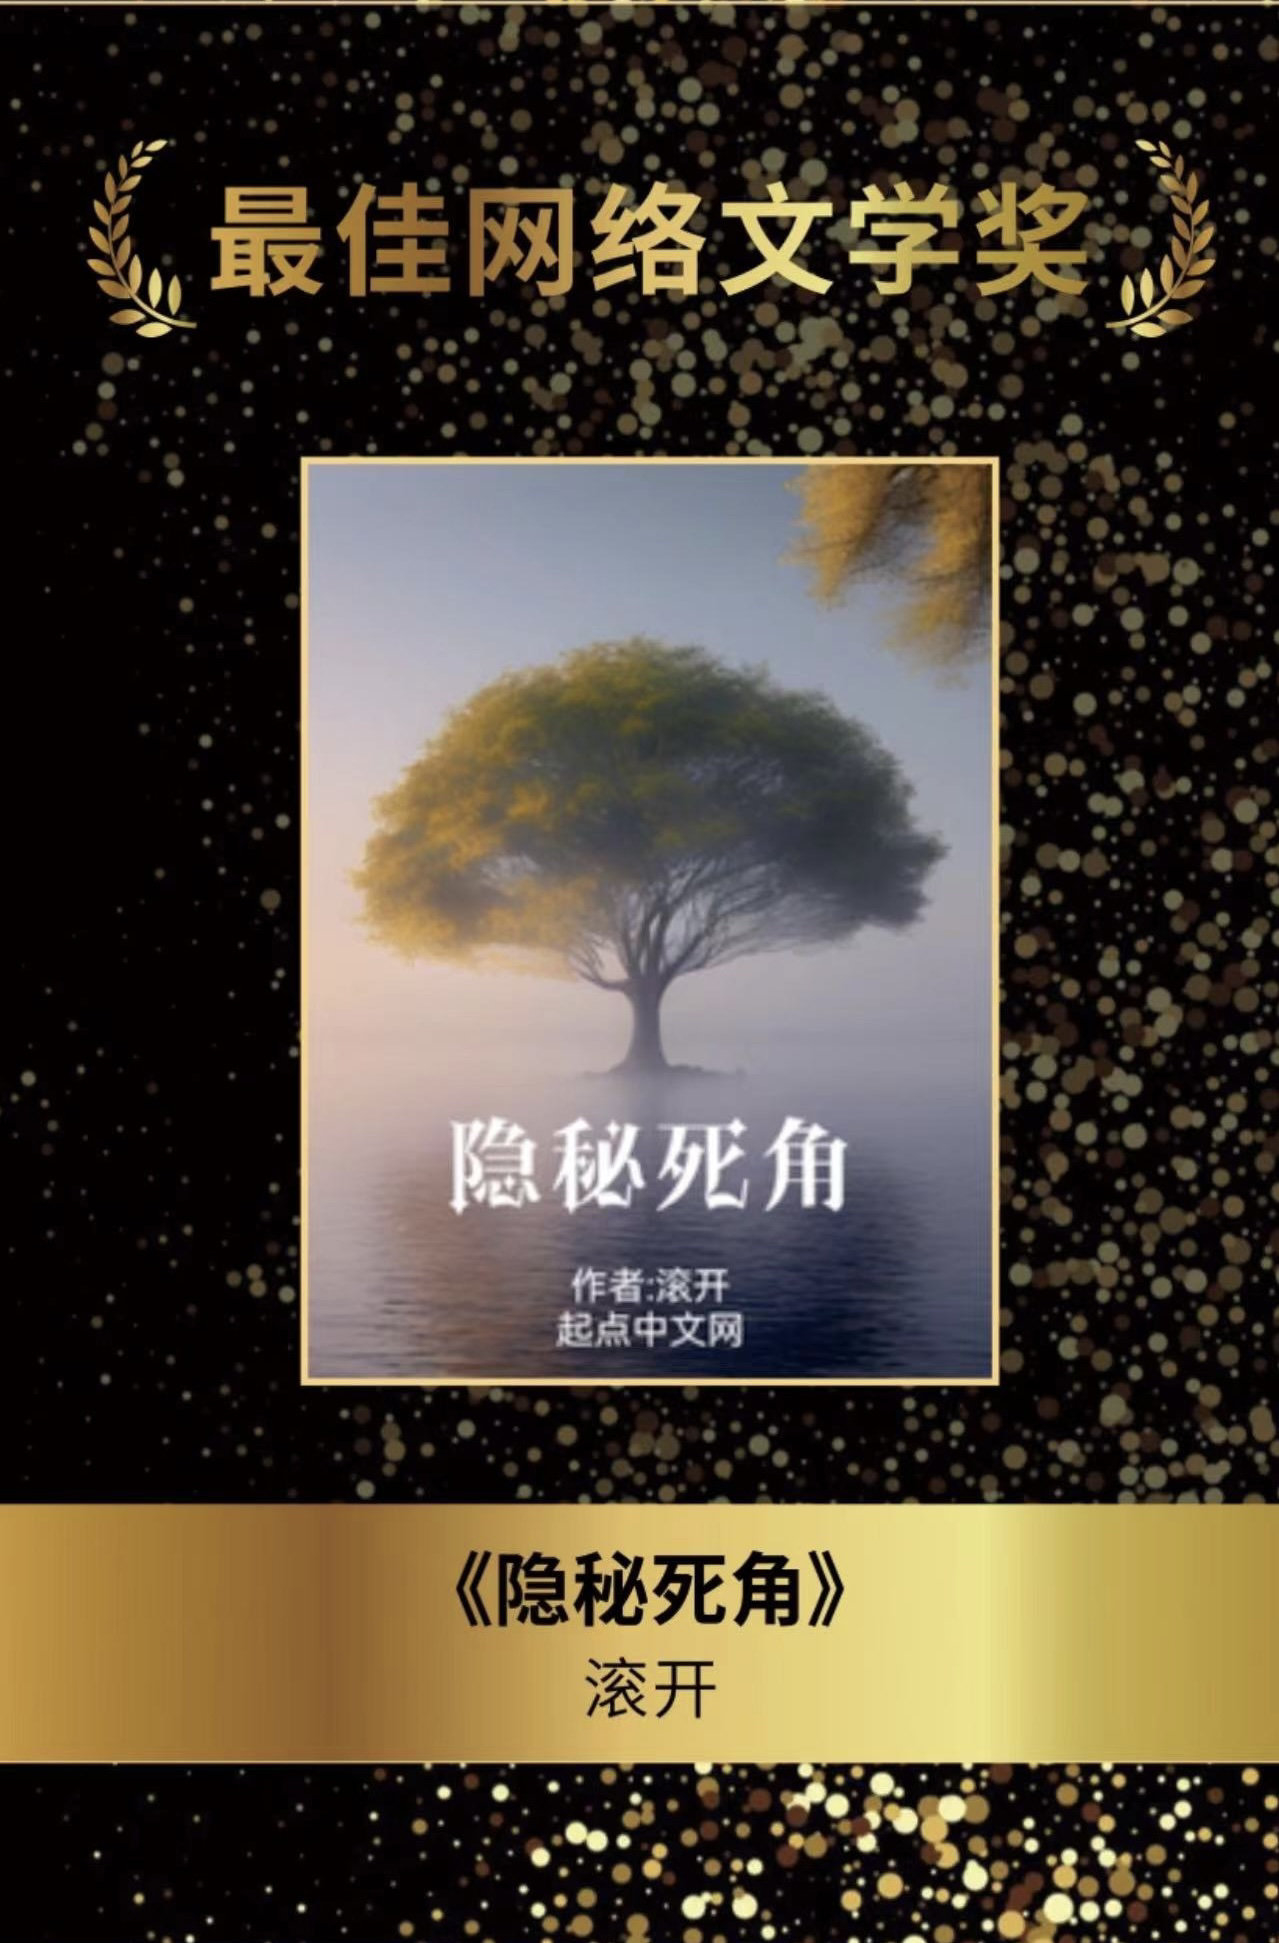 独家对话第34届银河奖“最佳网络文学奖”得主何庆丰：《流浪地